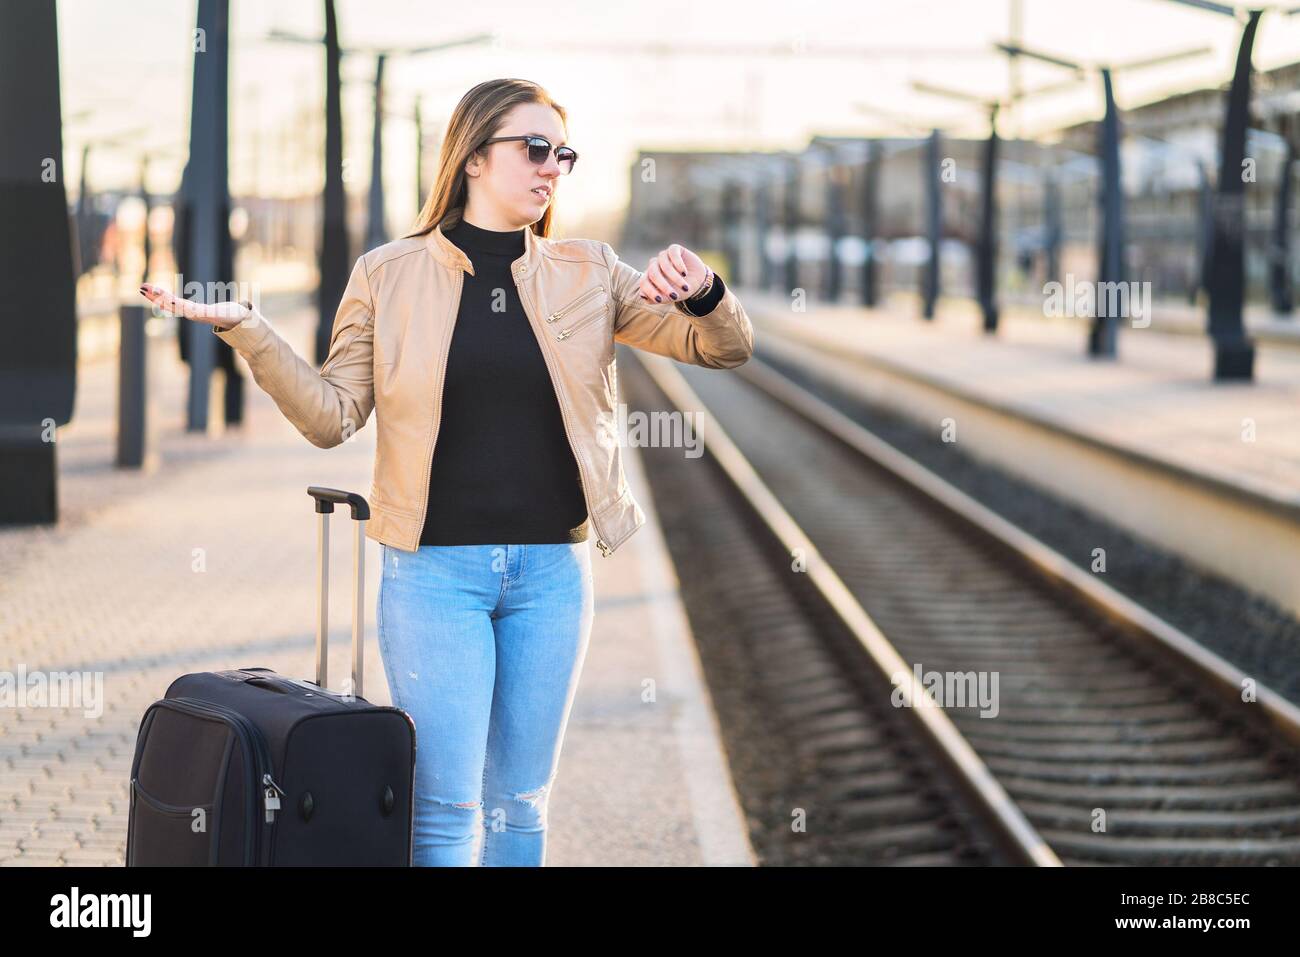 Verspätete, verspätete, stornierte oder verfahrene Züge. Verwirrte Frau, die sich die Zeit ansieht und zuschaut, während sie auf der Plattform wartet. Stockfoto